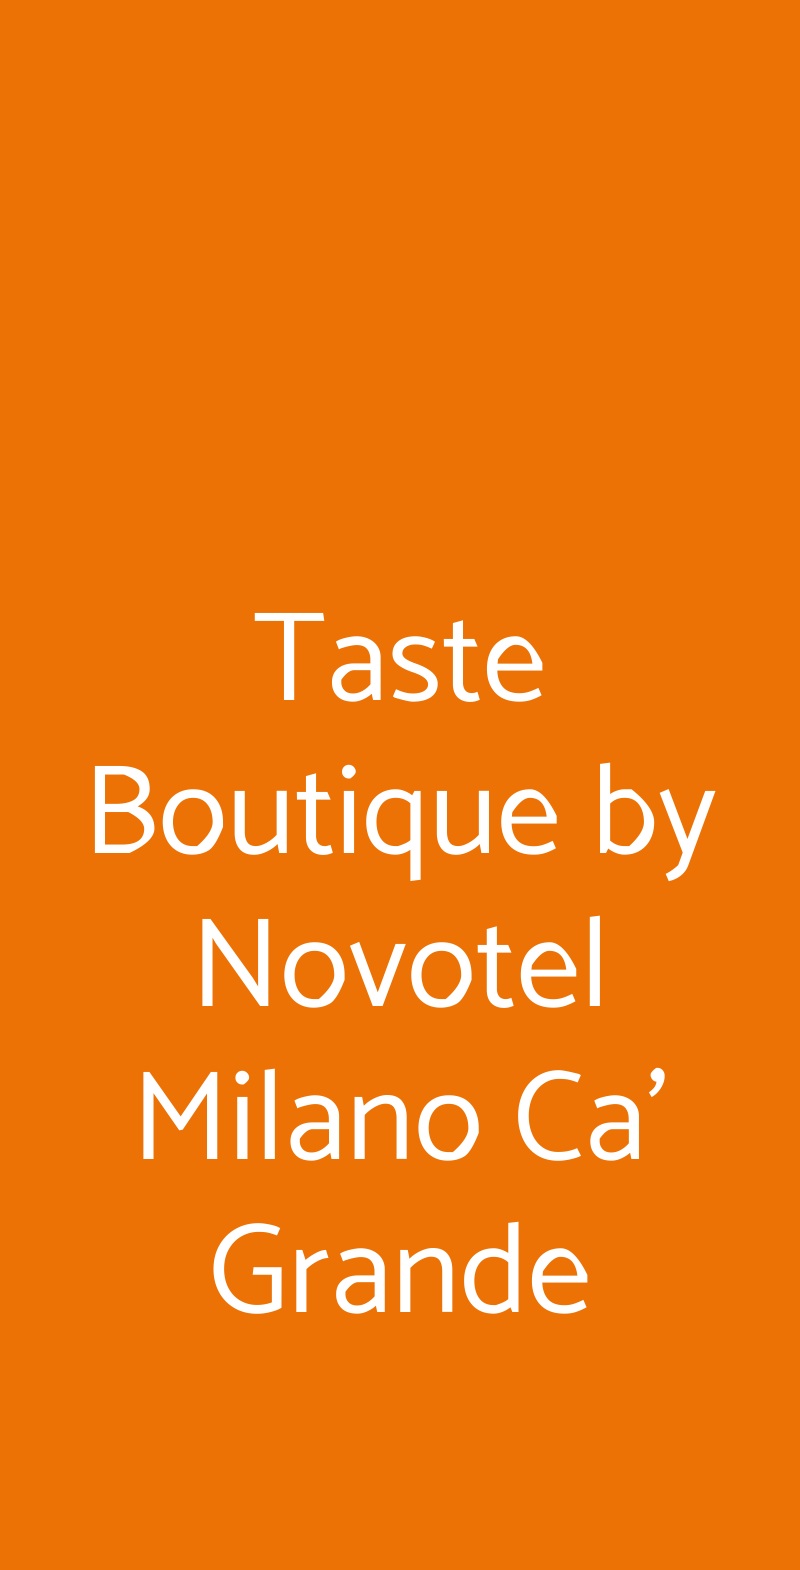 Taste Boutique by Novotel Milano Ca' Grande Milano menù 1 pagina